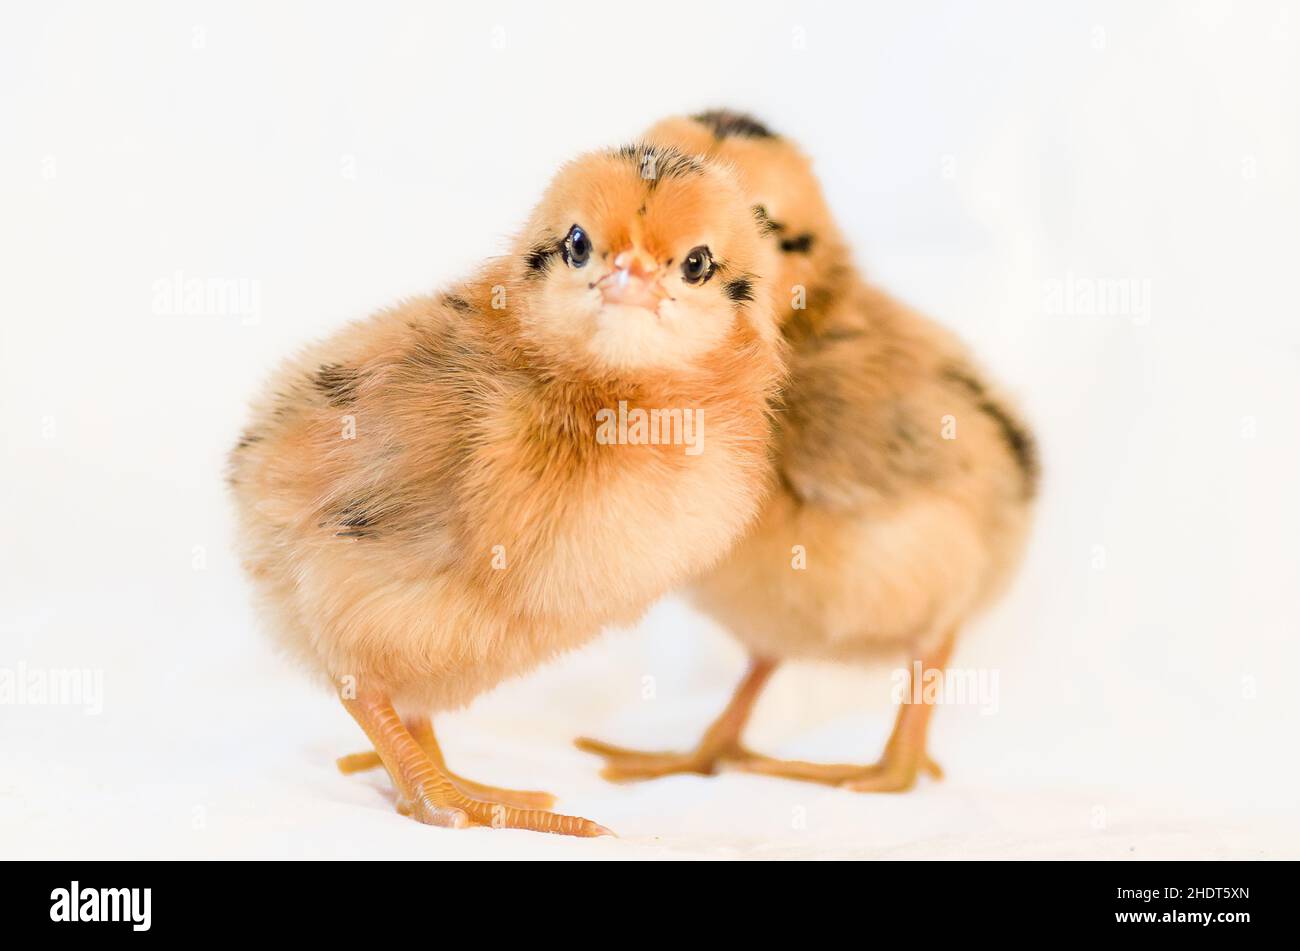 pulcini, pollo del bambino, anatra del bambino, bambino del pollo, uccello giovane, uccelli giovani Foto Stock